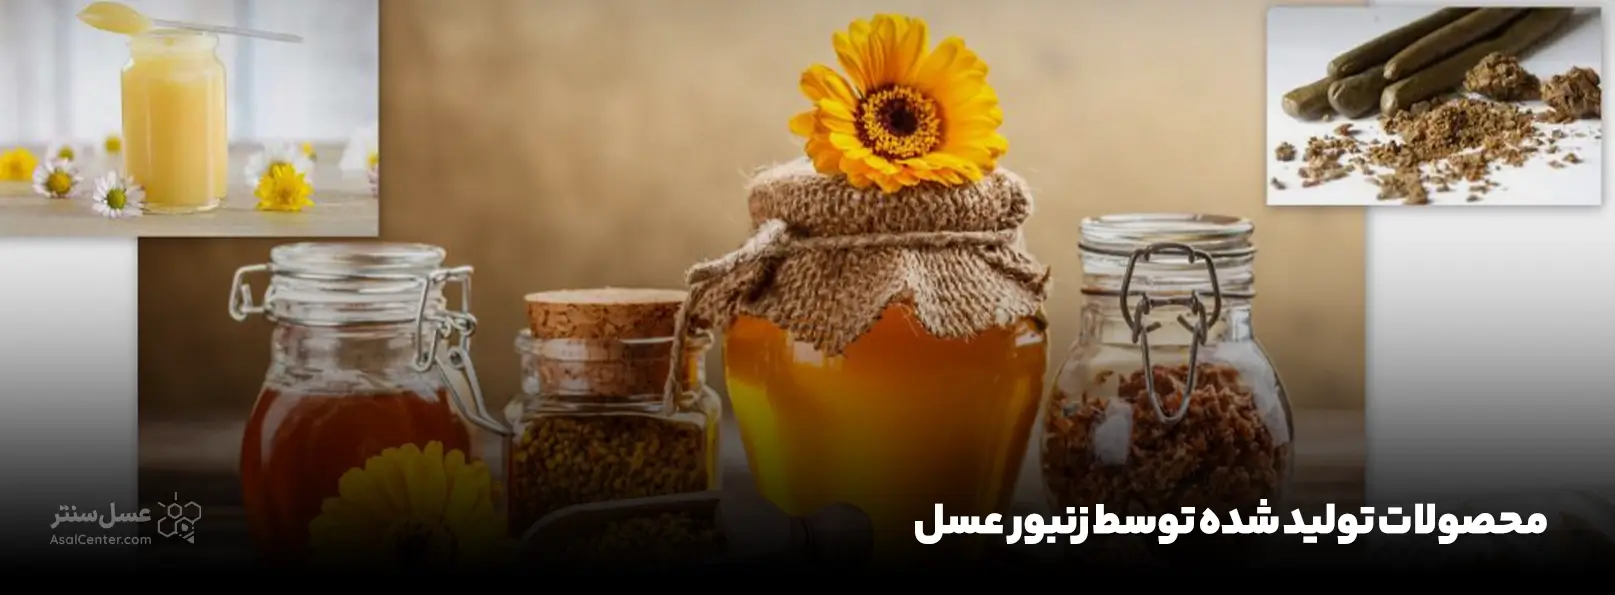 محصولات تولید شده توسط زنبور عسل